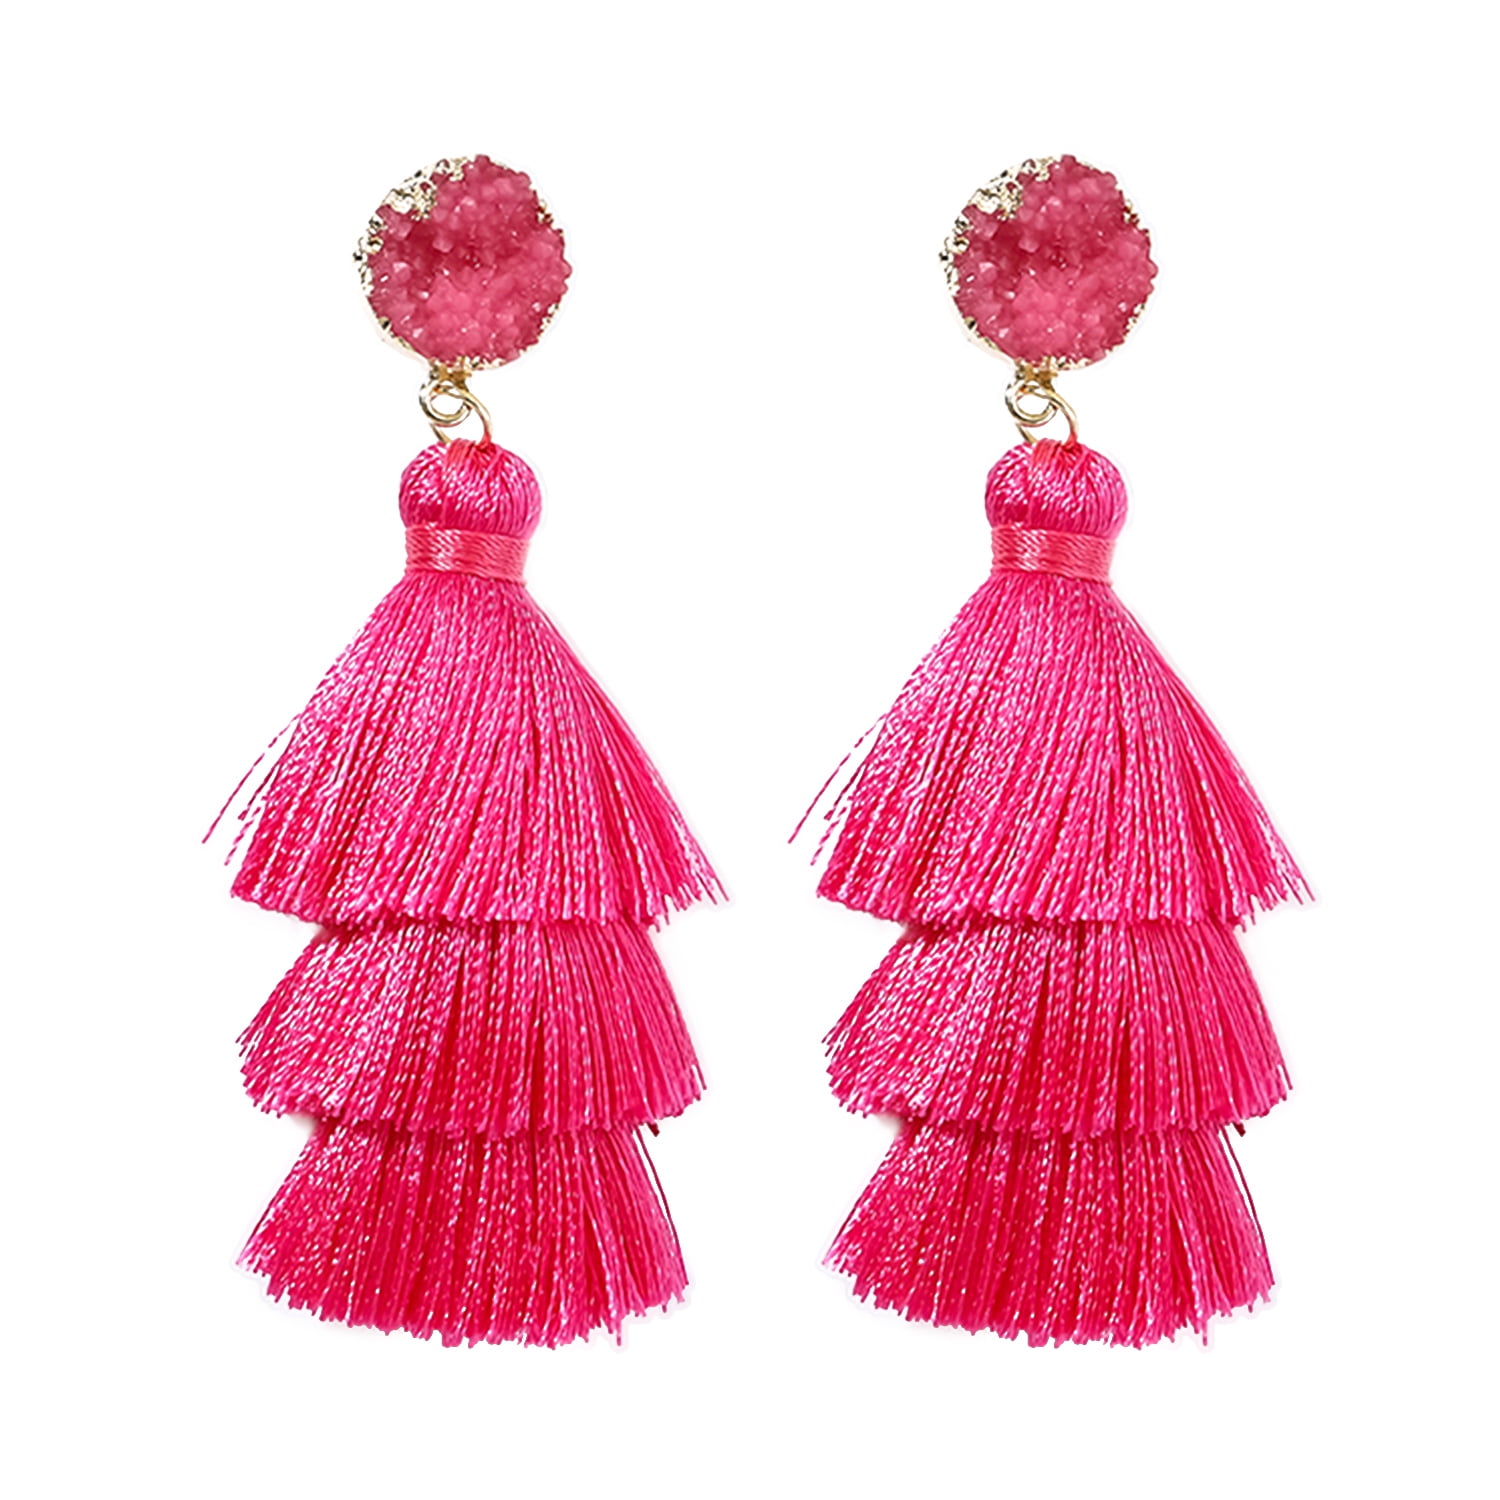 Pink Tassel Earrings for Women | Colorful Layered Tassle 3 Tier Bohemian Earrings | Dangle Drop Earrings for Women Gifts